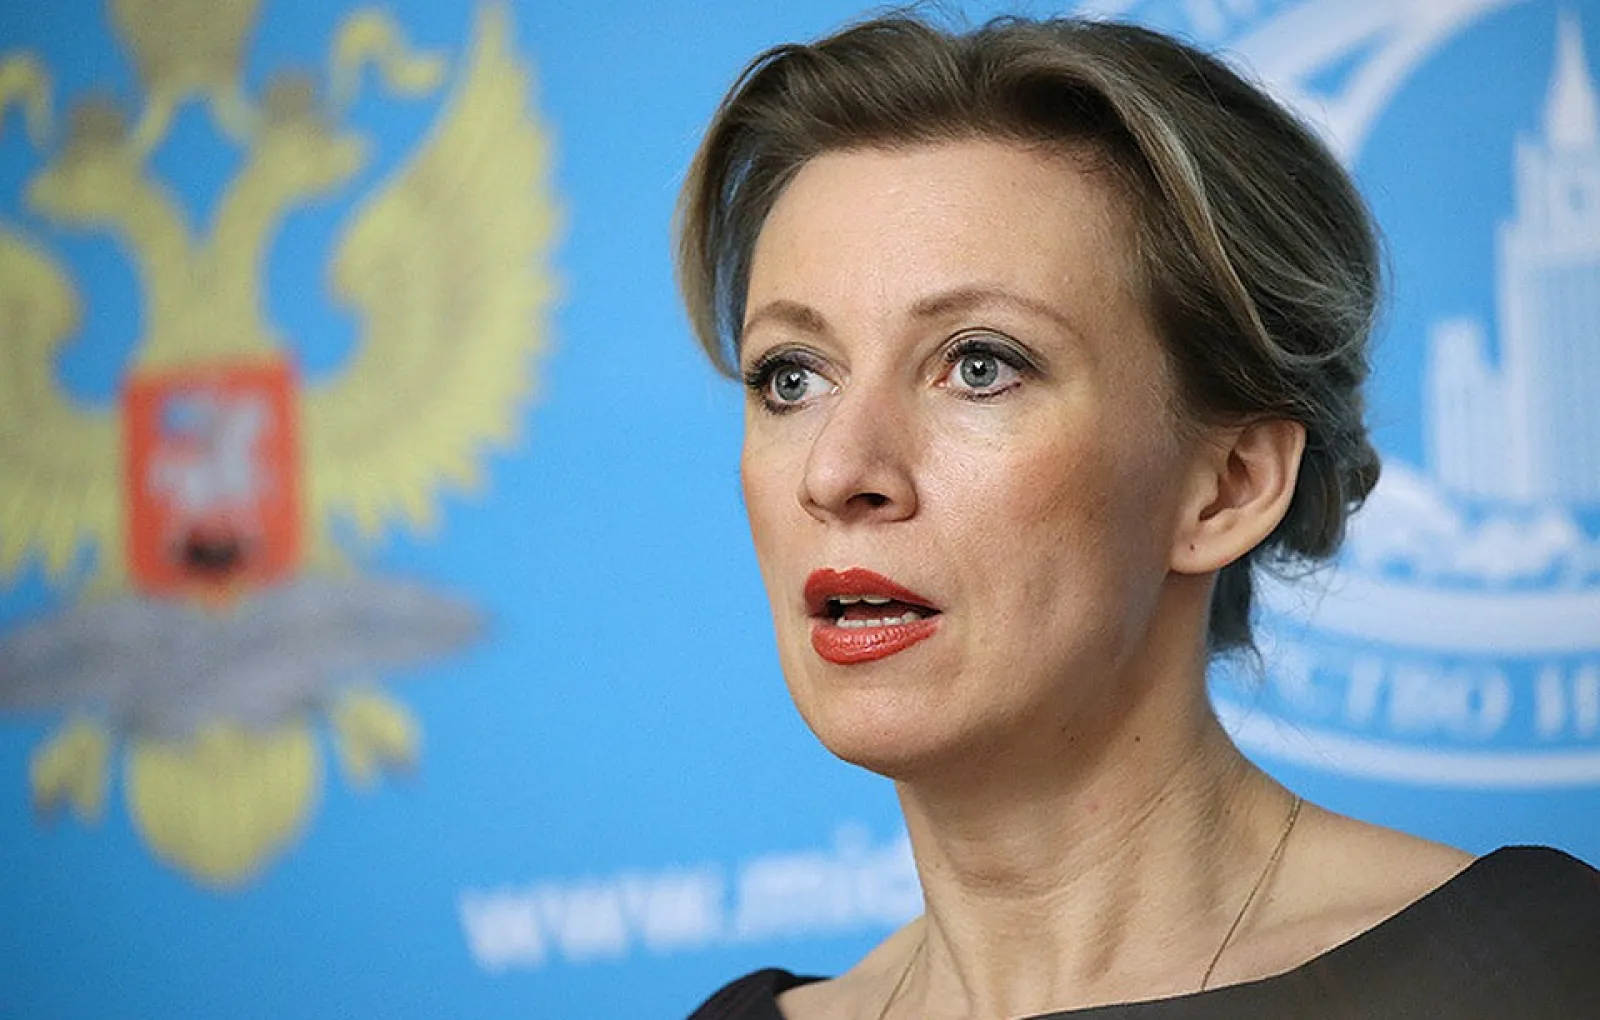 Мария Захарова: НАТО отвлекает внимание от своих действий